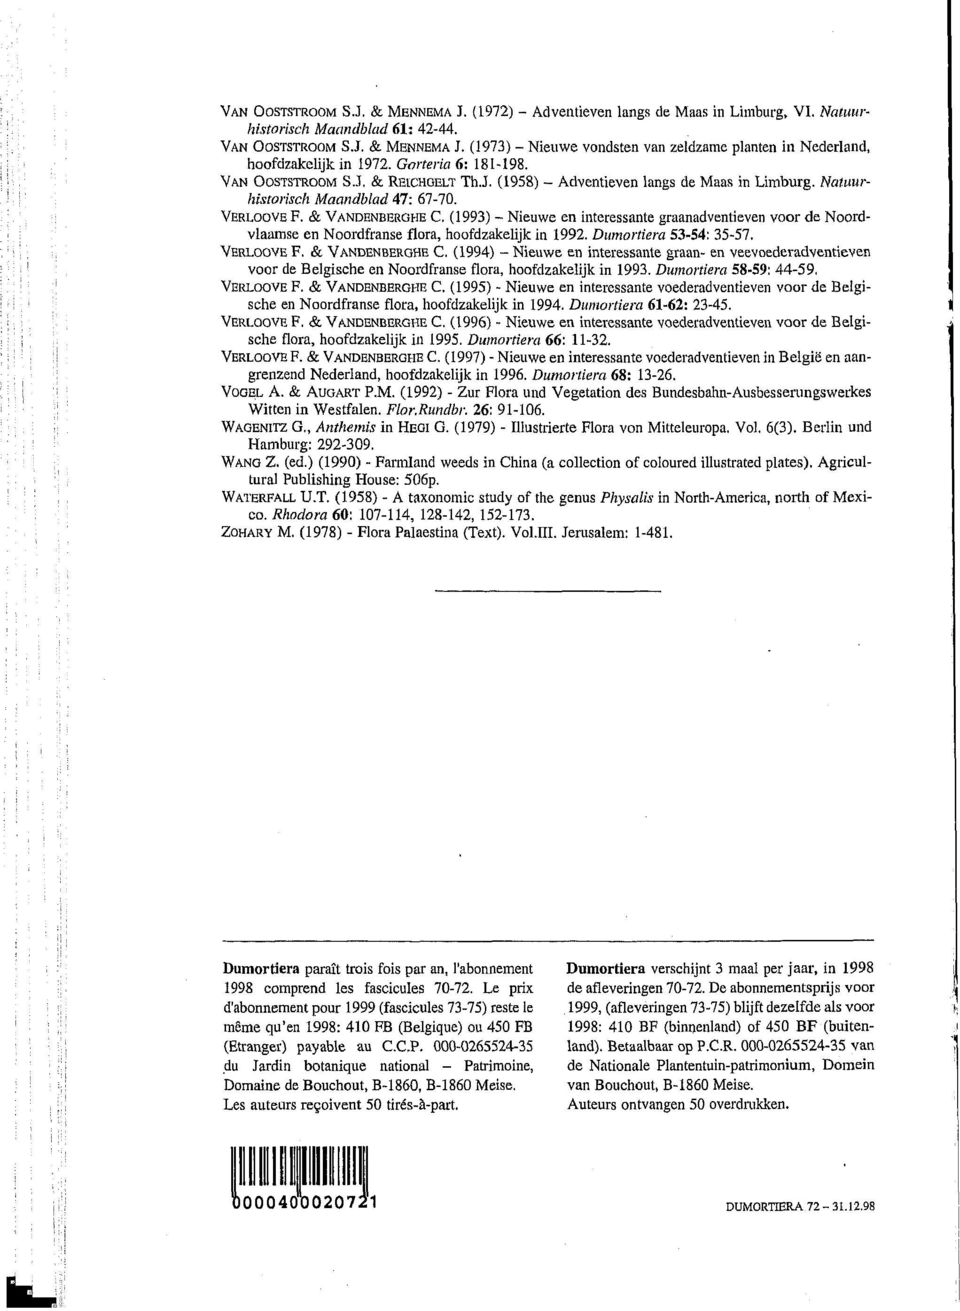 (1993) - Nieuwe en interessante graanadventieven voor de Noordvlaamse en Noordfranse flora, hoofdzakelijk in 1992. Dumortiera 53-54: 35-57. VERLOOVE F. & VANDENBEROHE C.